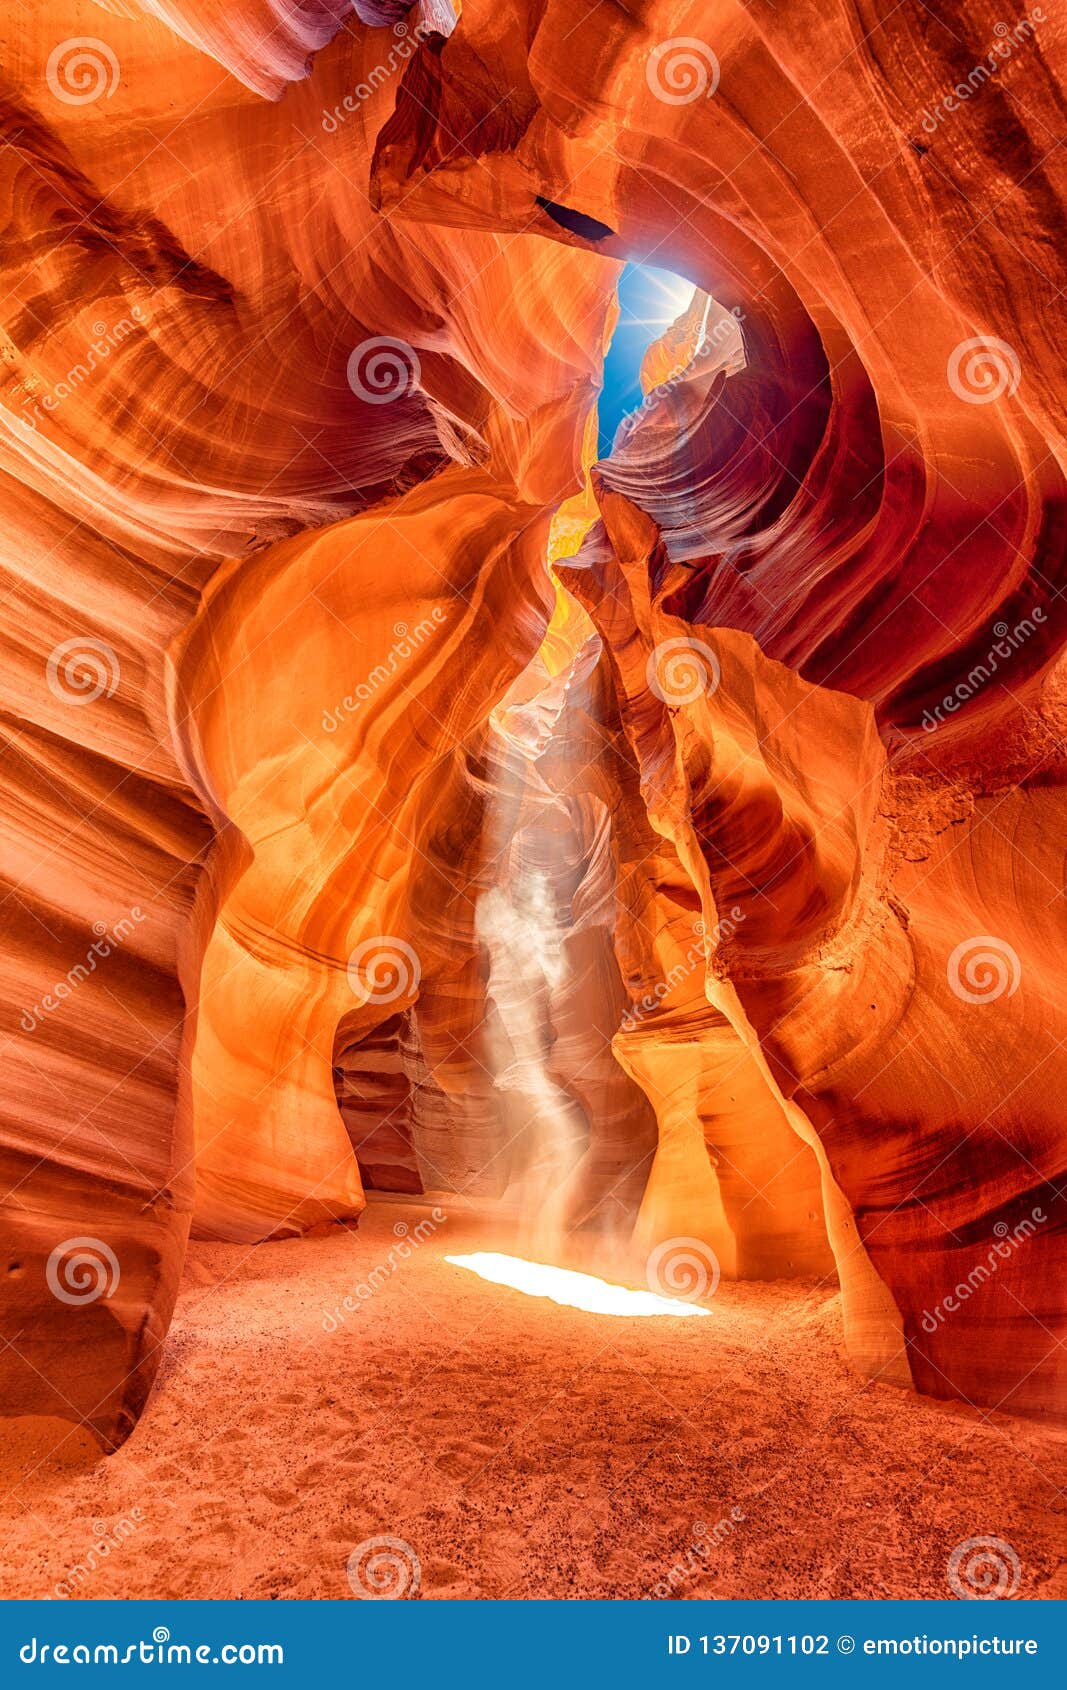 scenic, colorful and magical antelope canyon, arizona usa